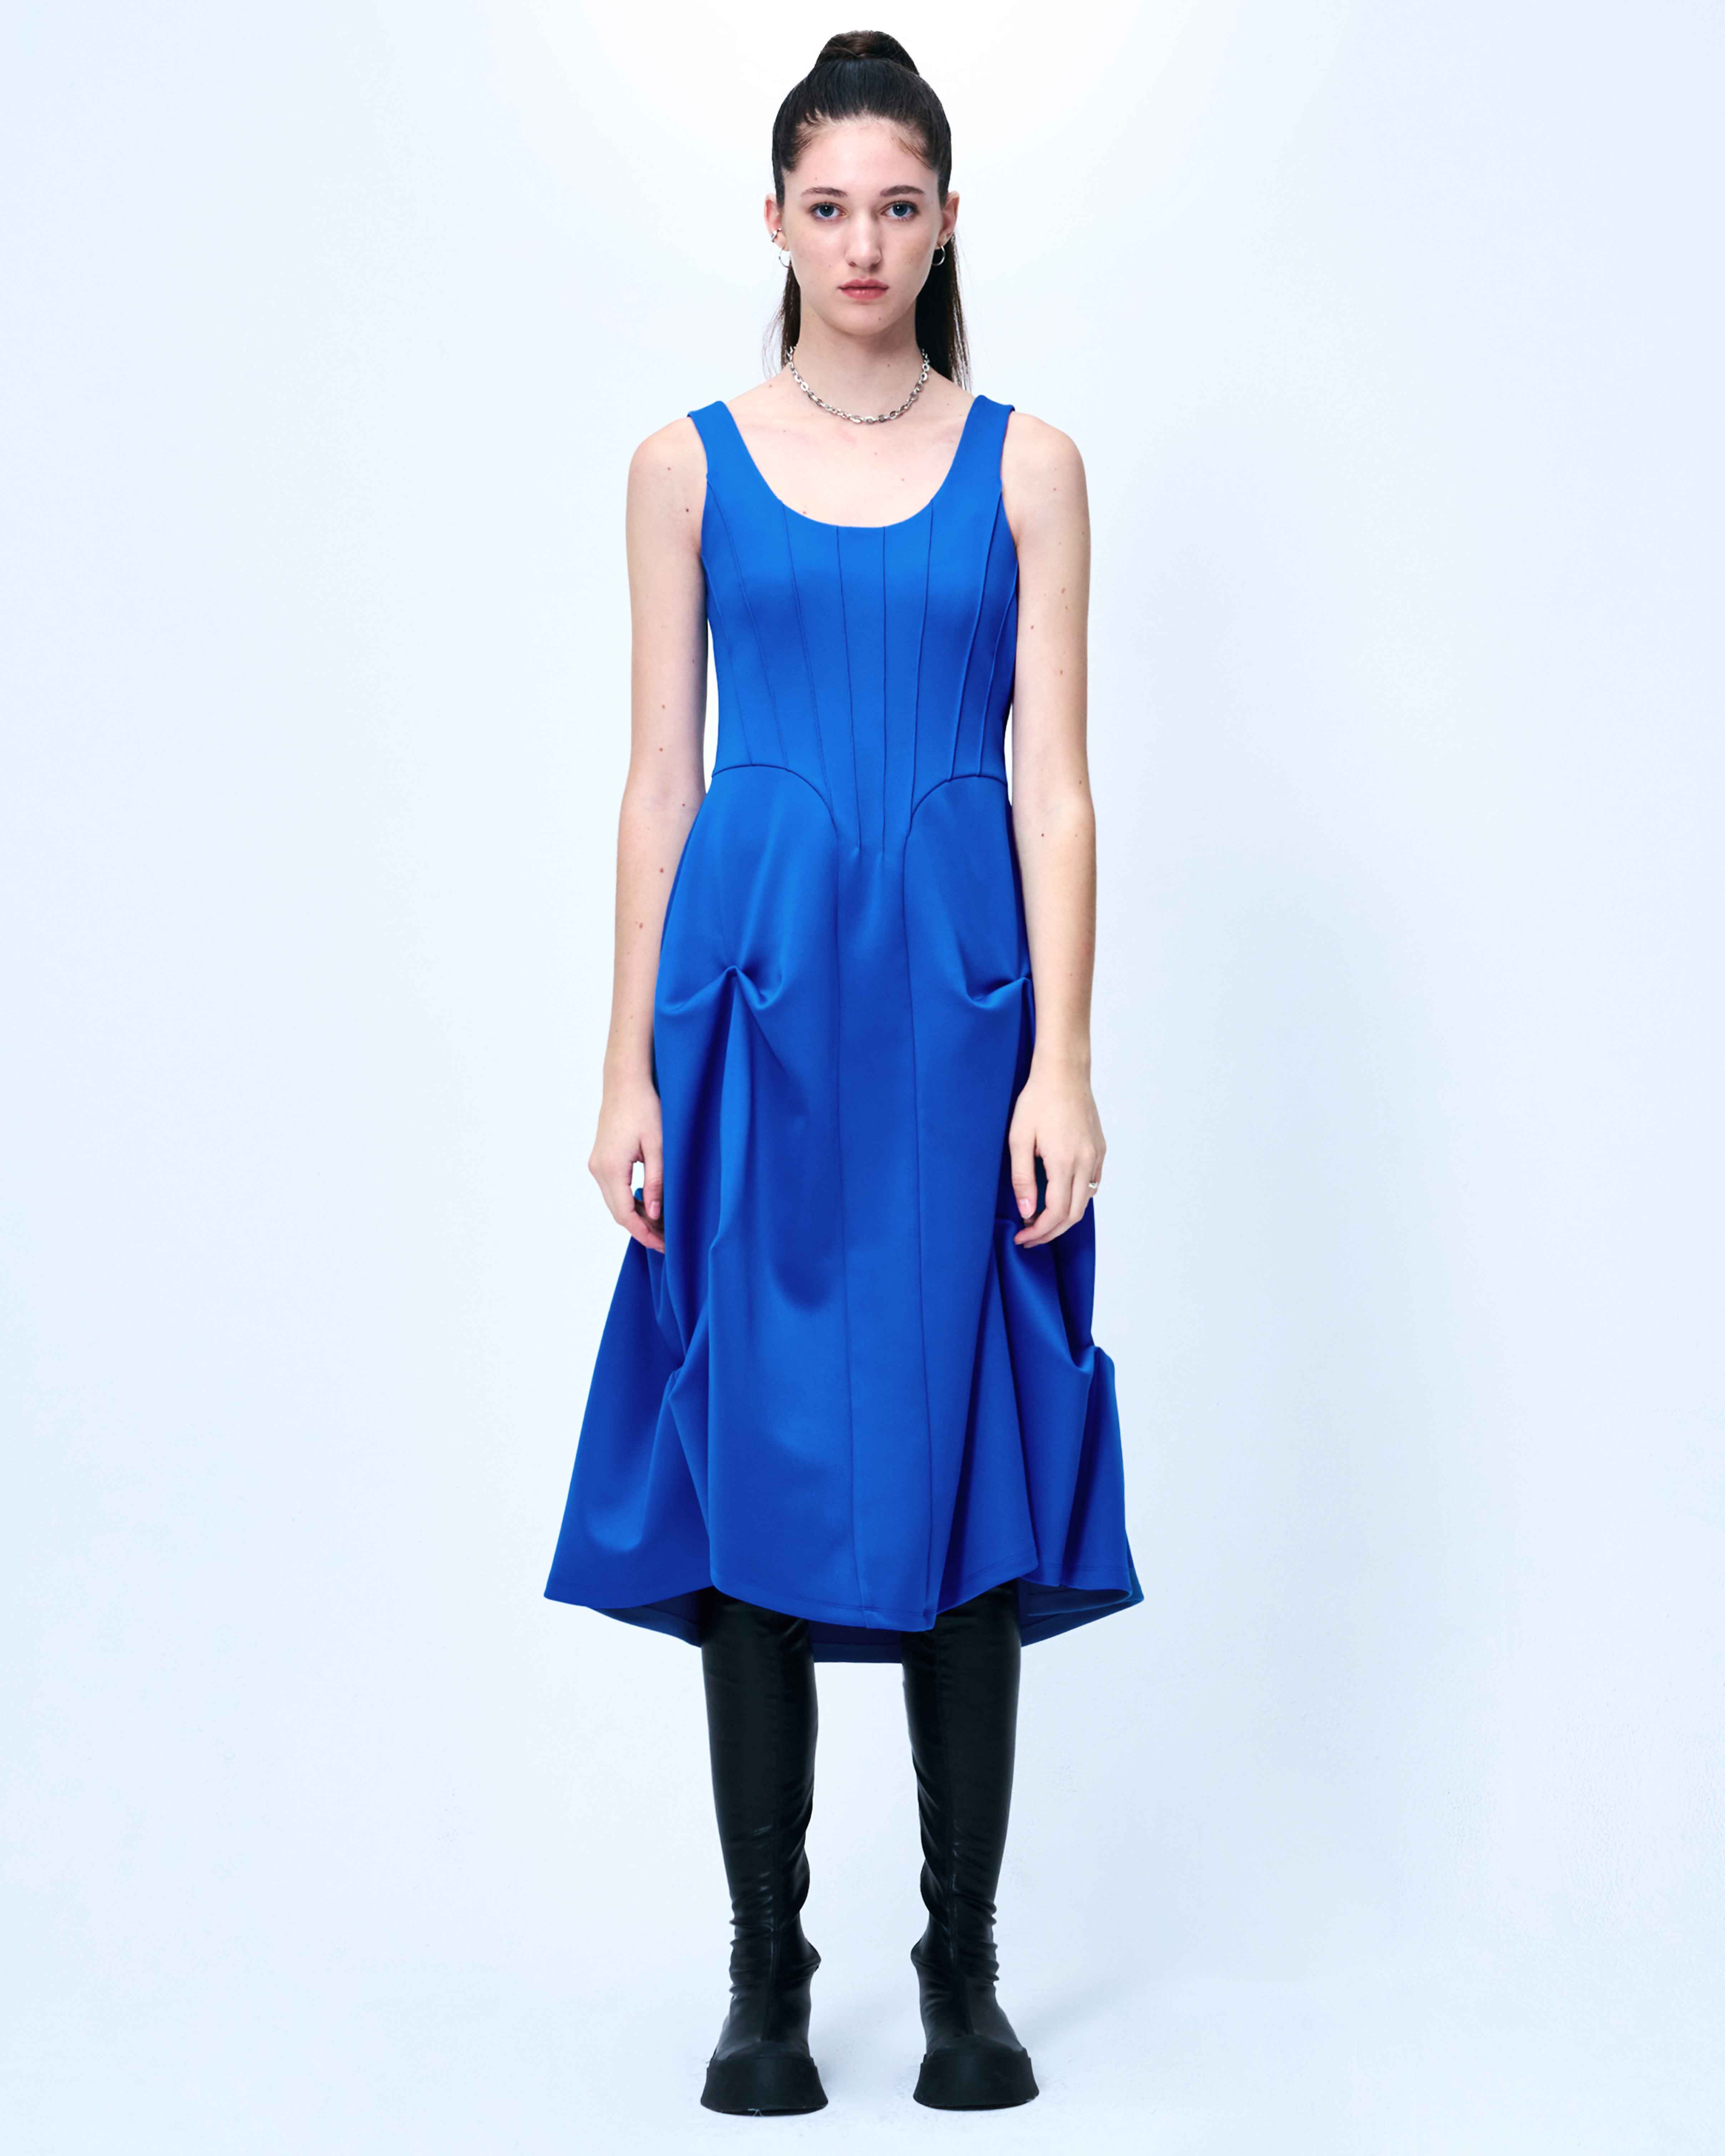 DOZI - Pintuck Jersey Dress _ Blue